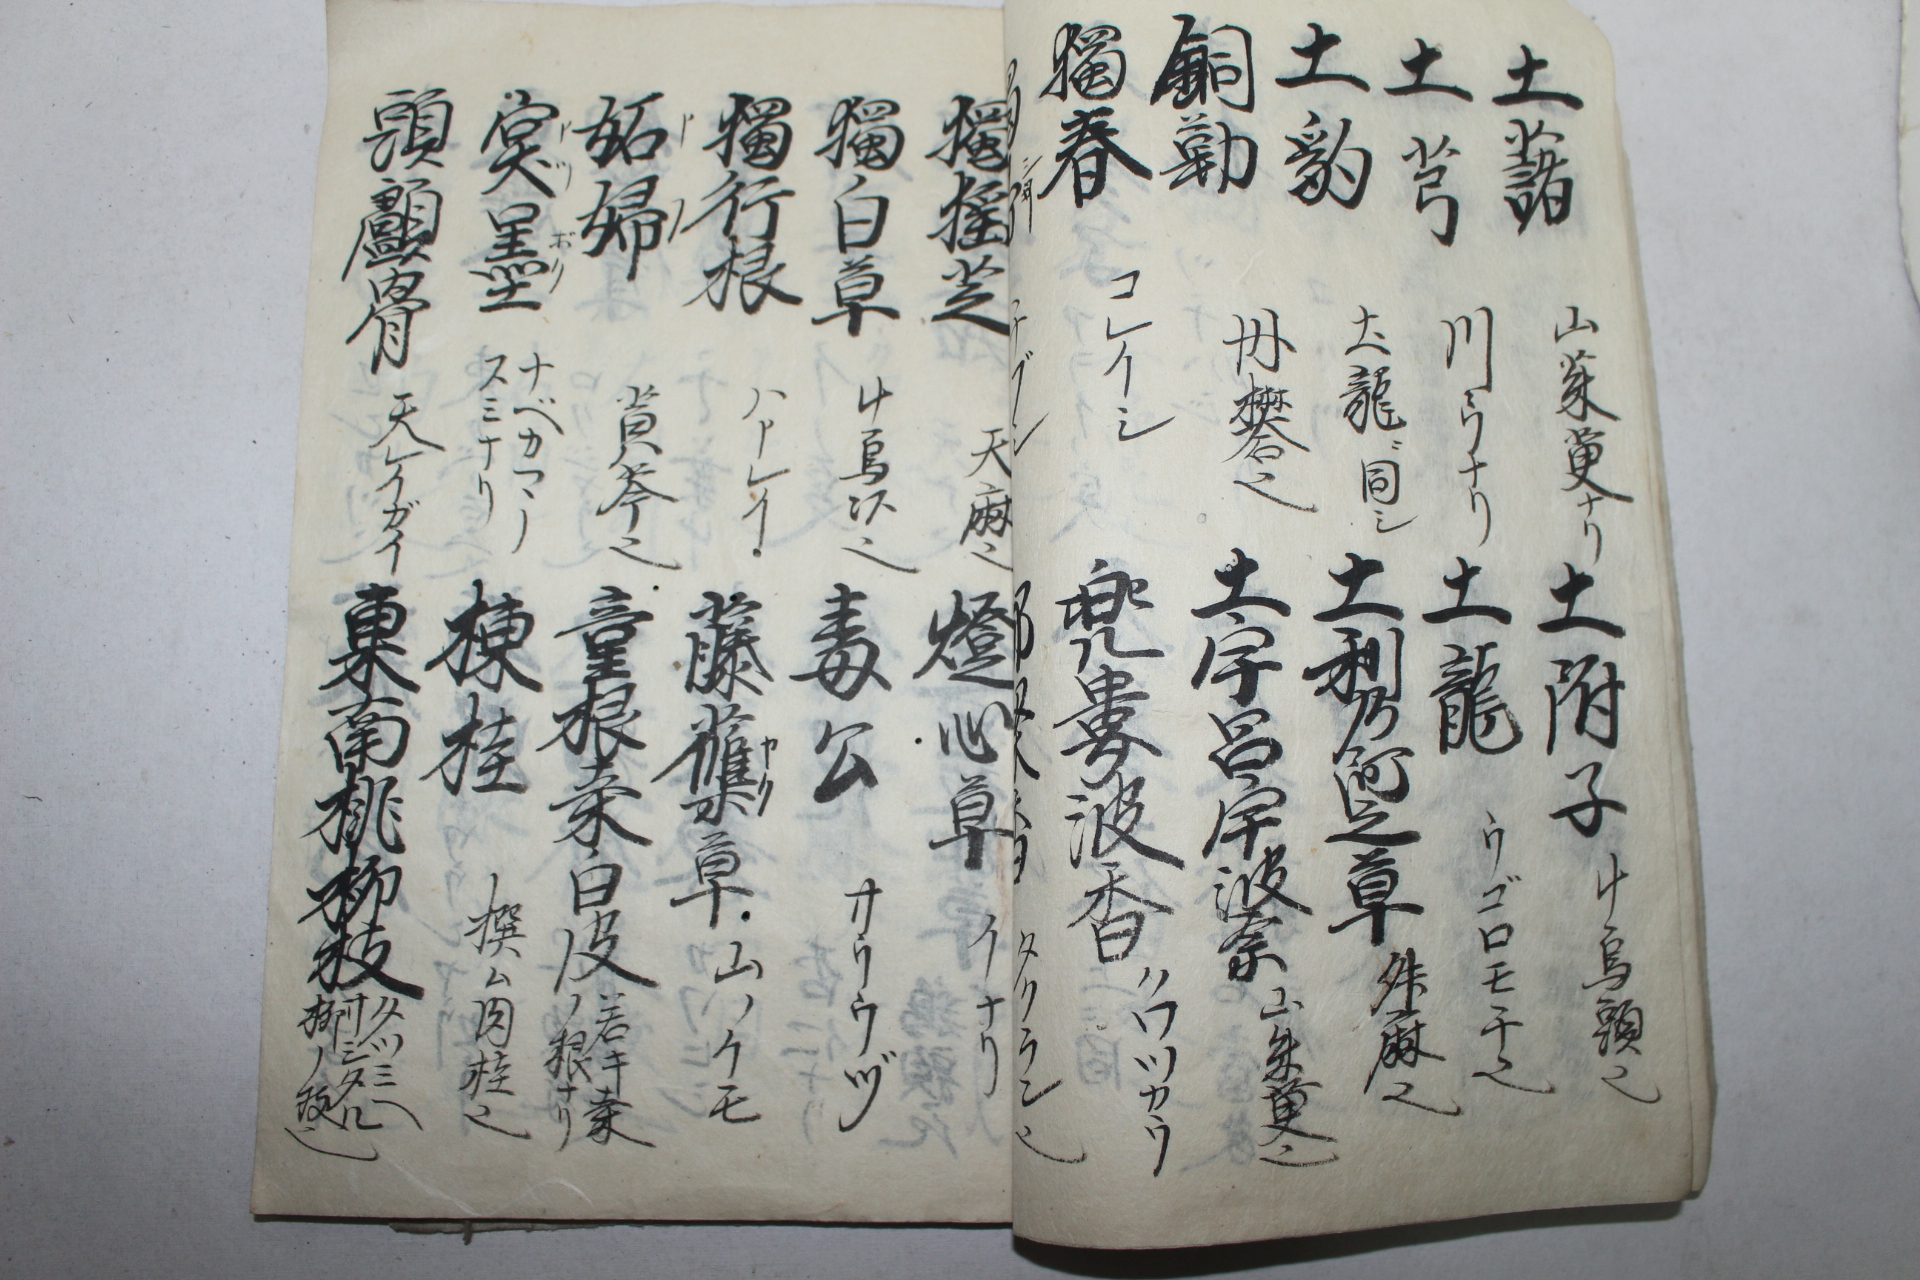 에도시기 일본필사본 약명조법기(藥名調法記)